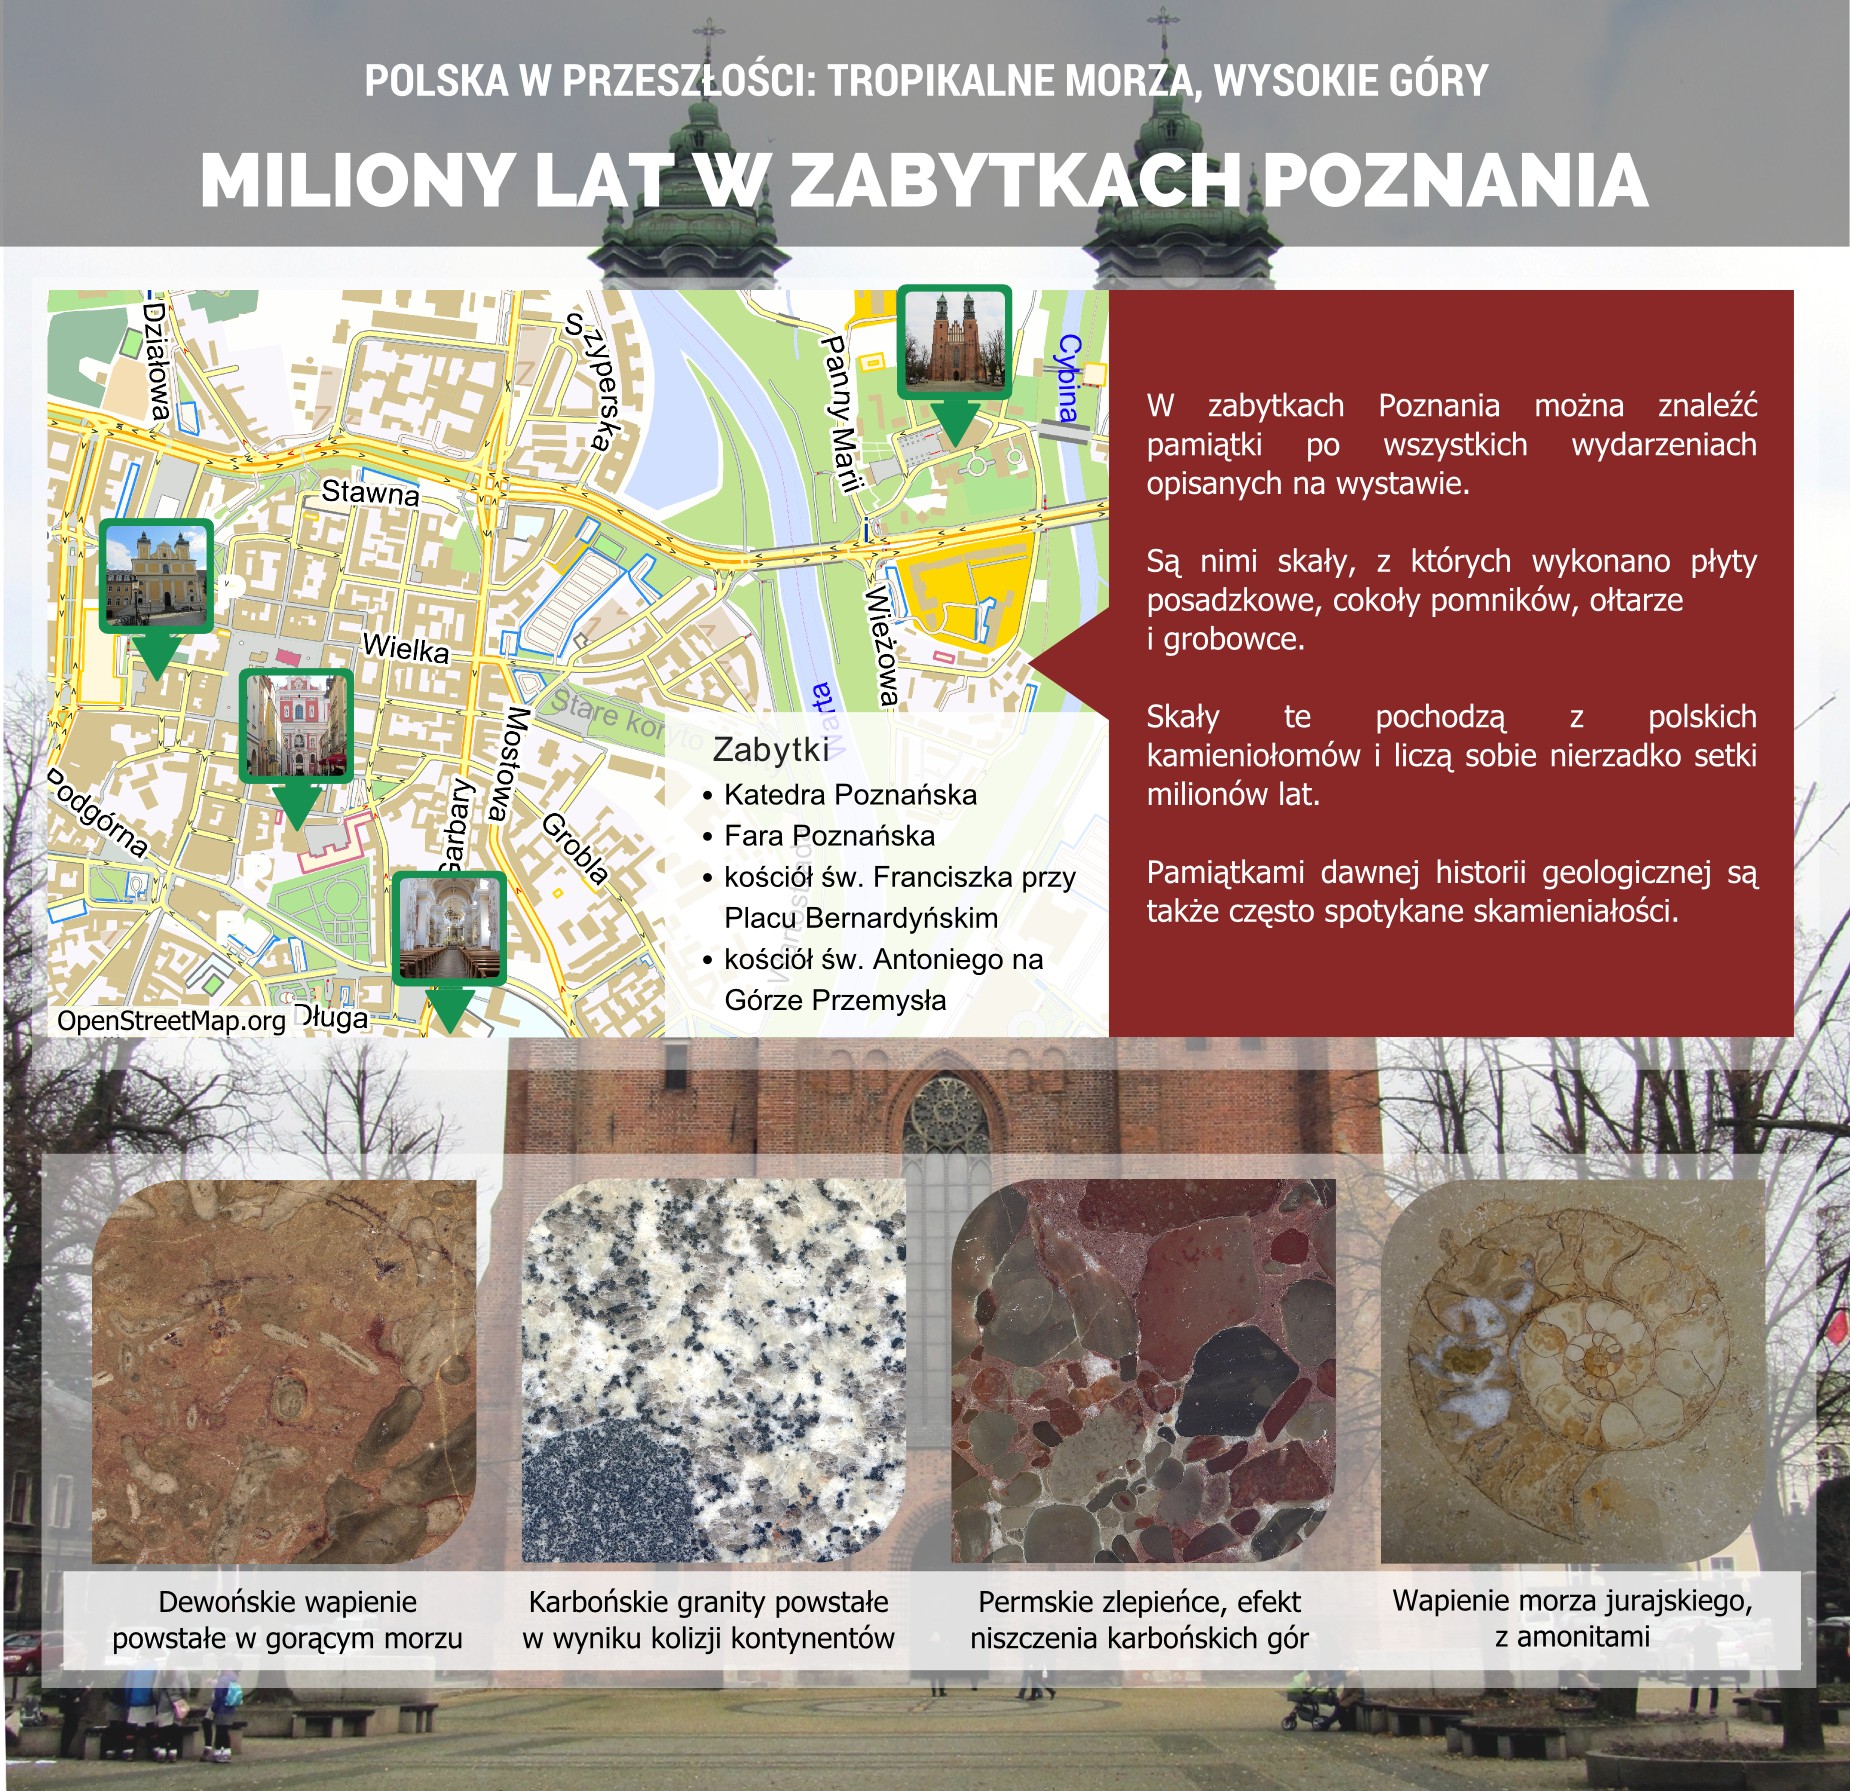 Ślady przeszłości geologicznej w zabytkach Poznania - plakat.